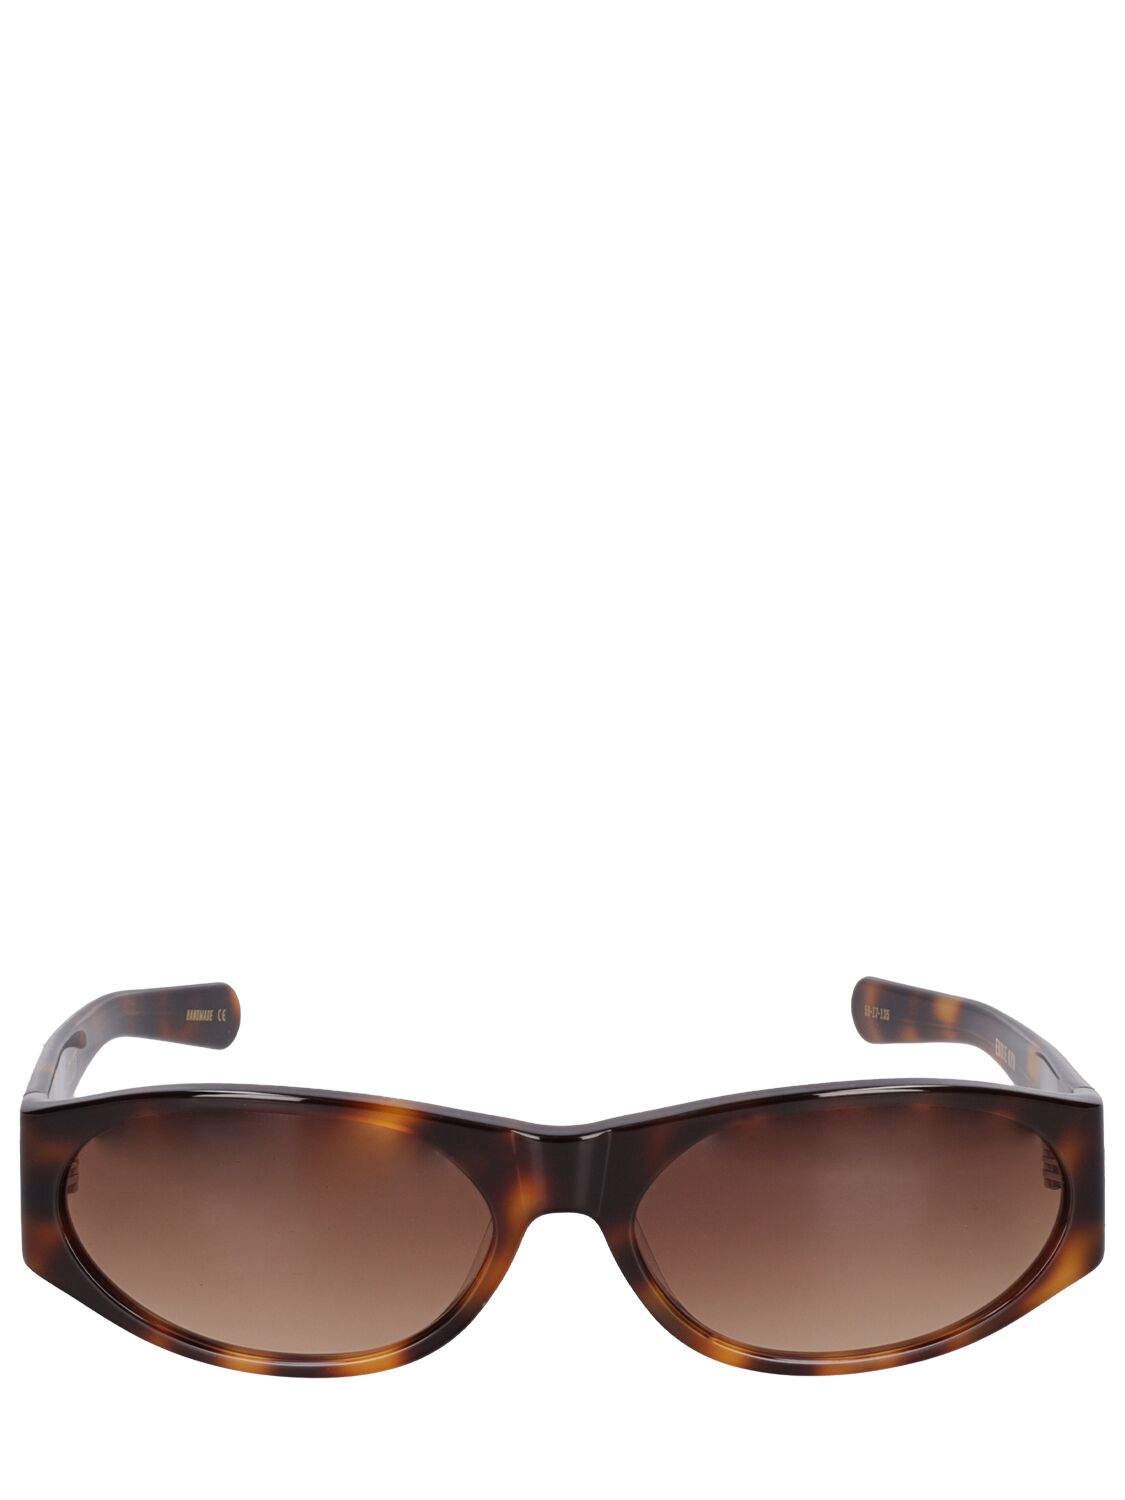 Flatlist Eyewear Eddie Kyu Sunglasses In Brown